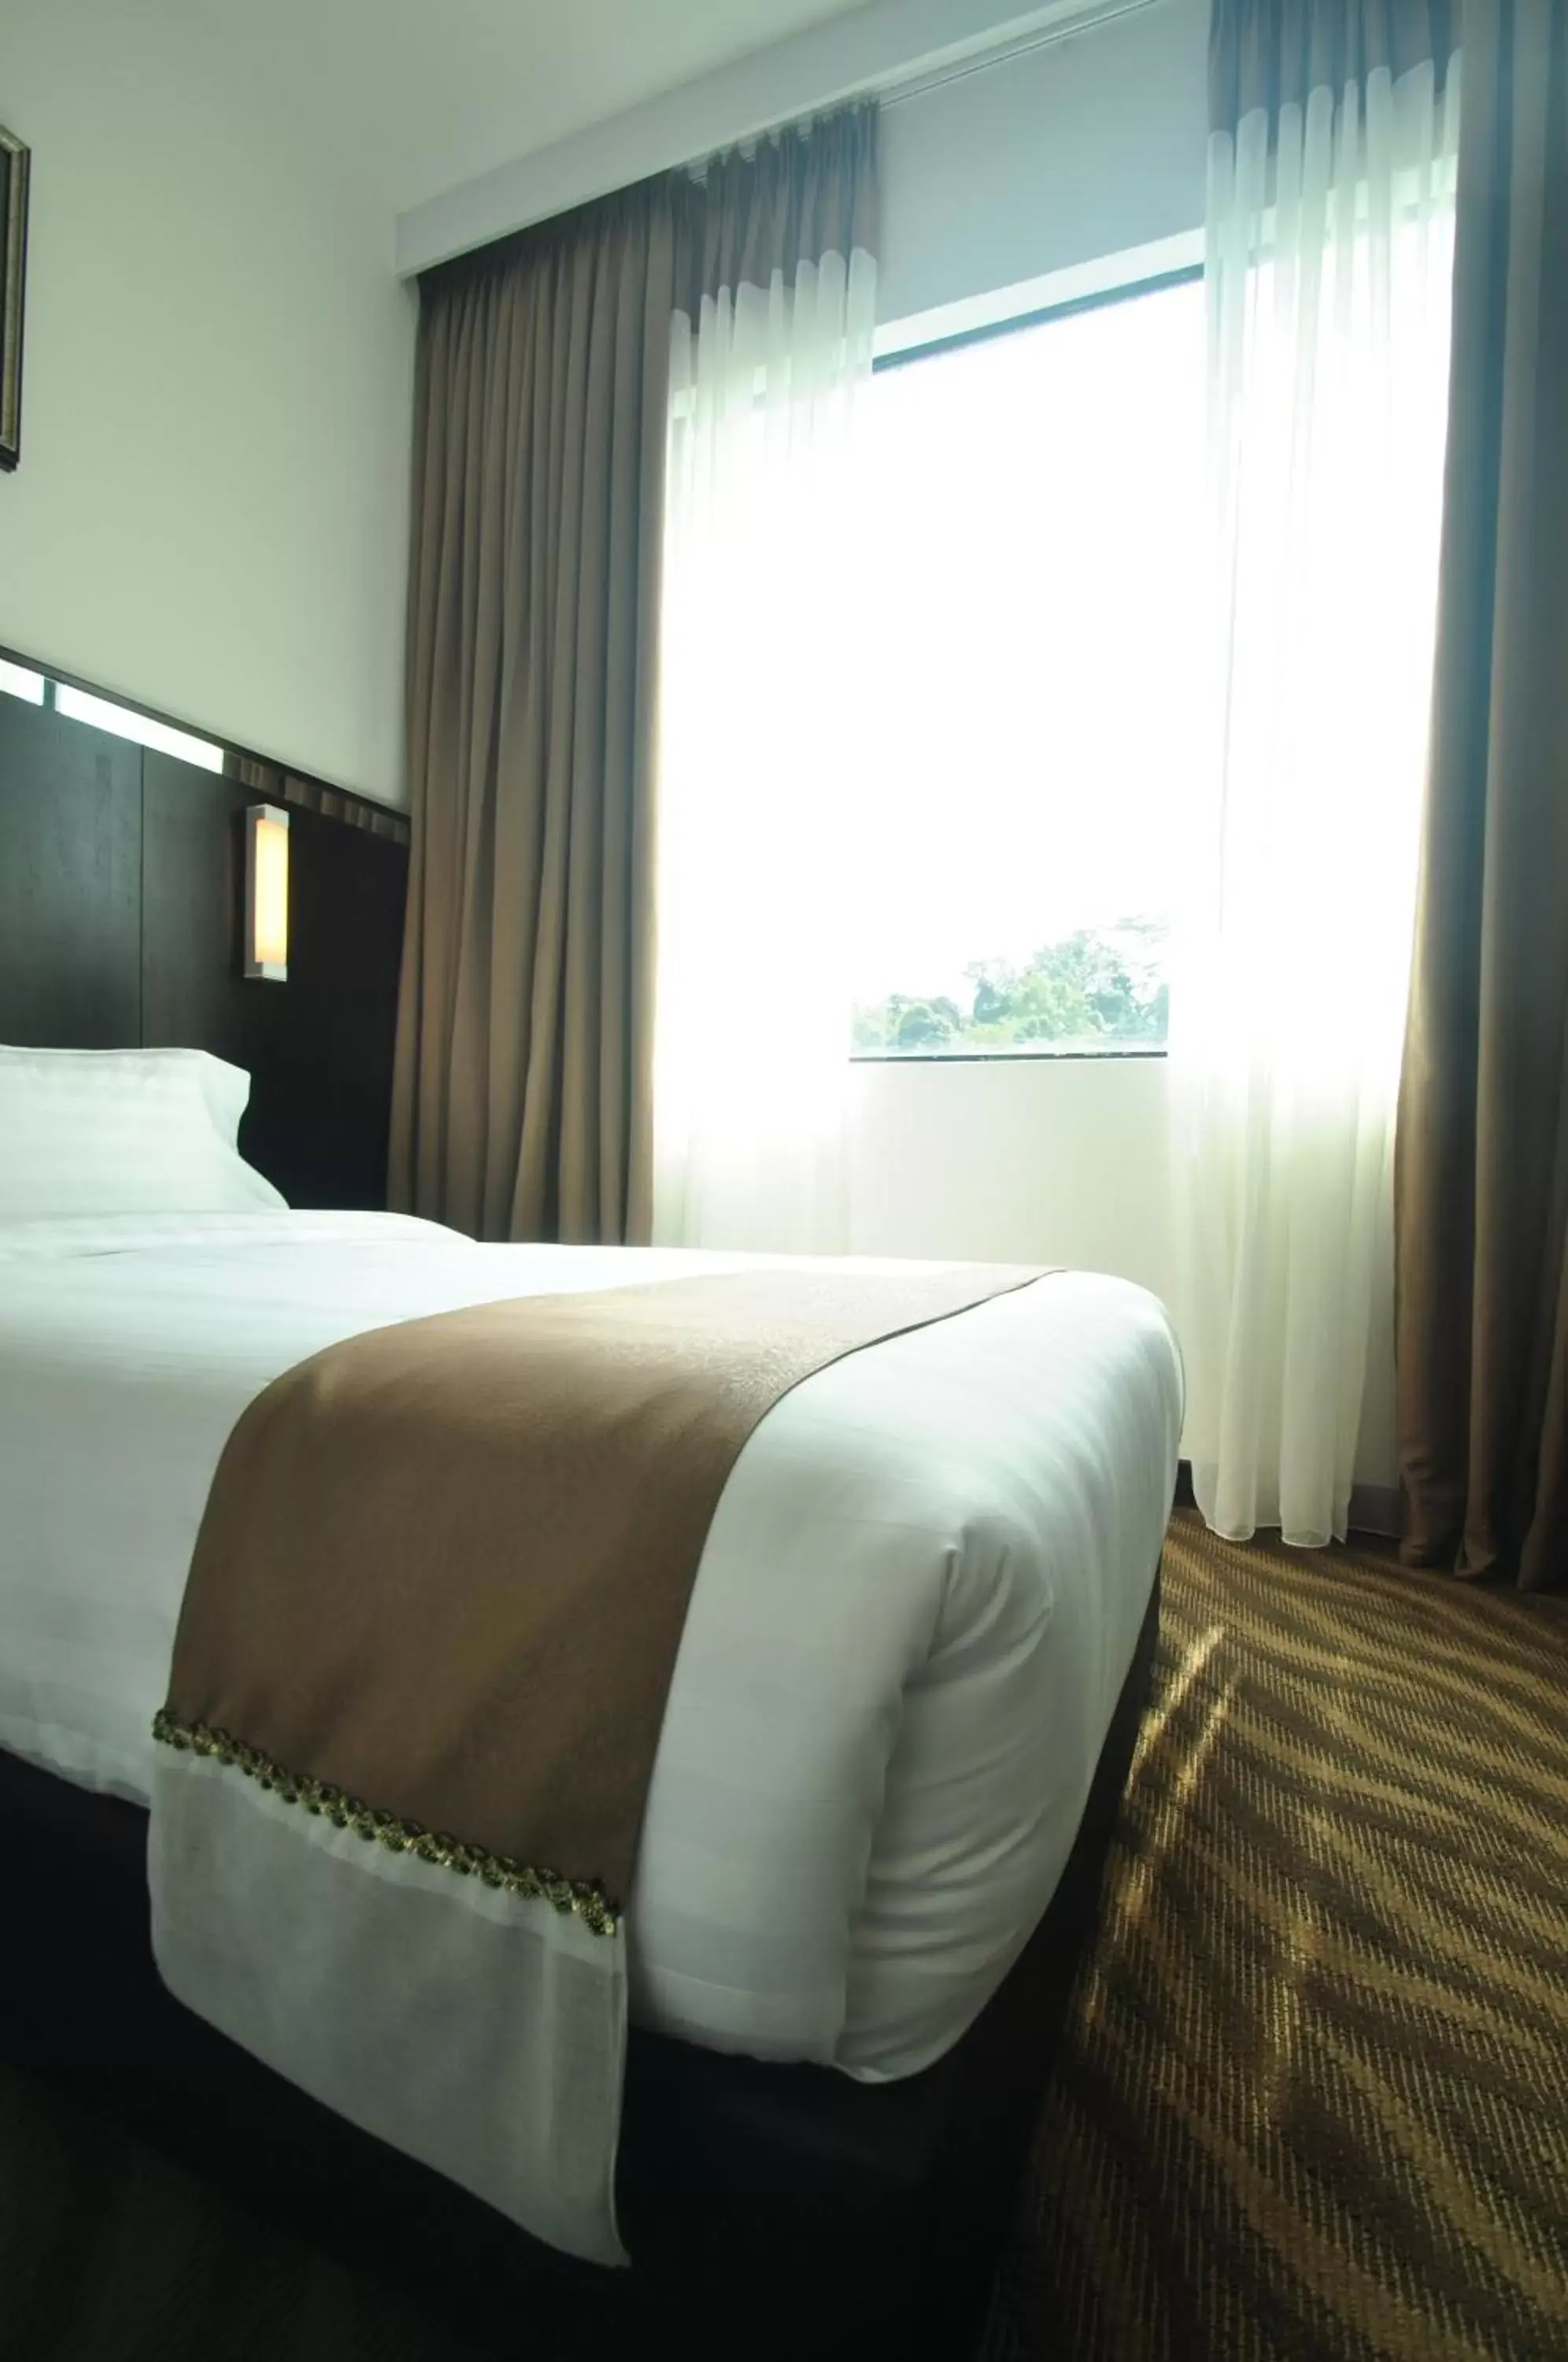 Bed in Dreamtel Kota Kinabalu